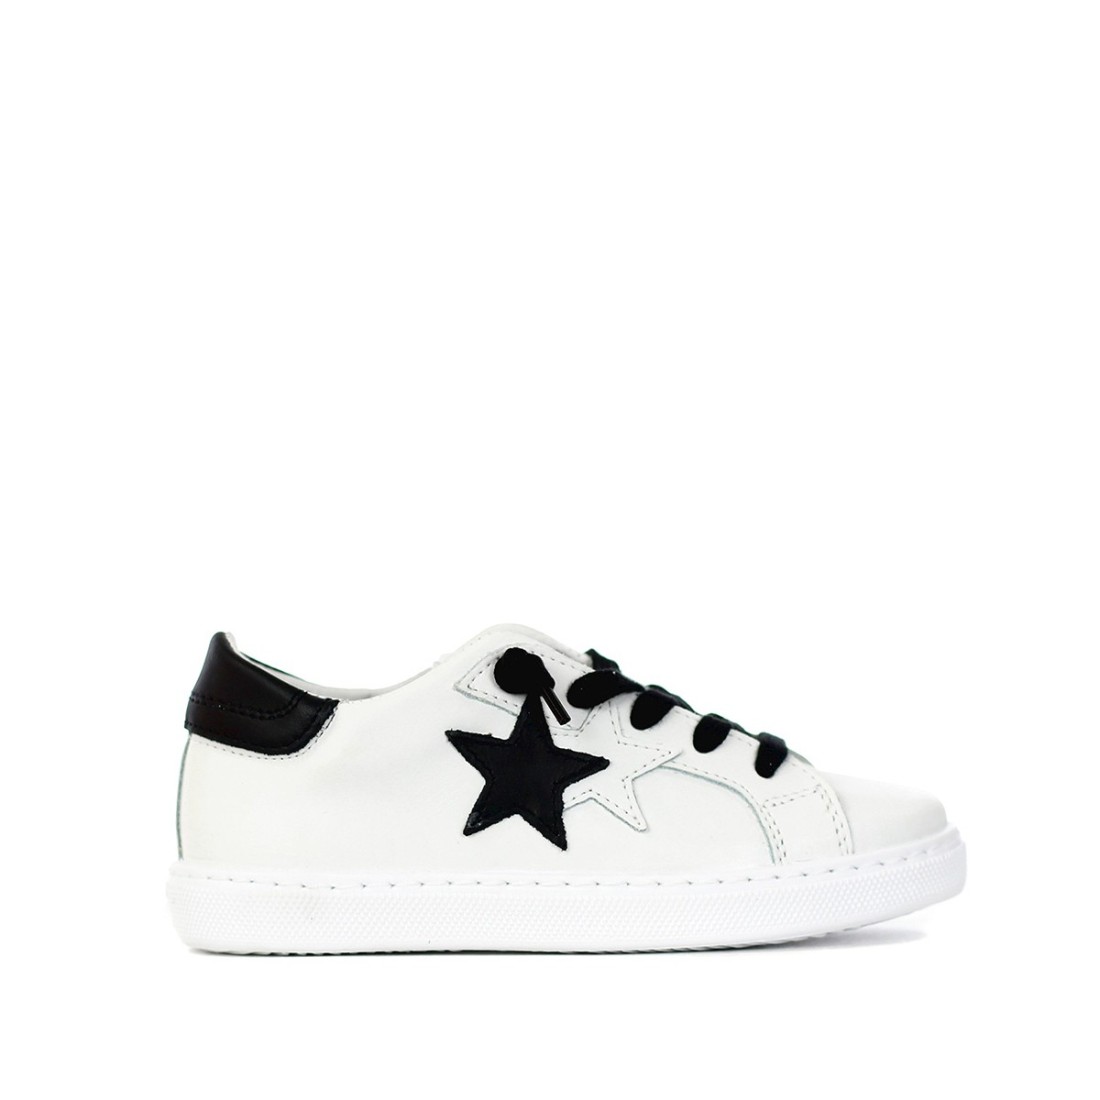 Image of 2STAR - Sneakers - Colore: Bianco,Taglia: 29